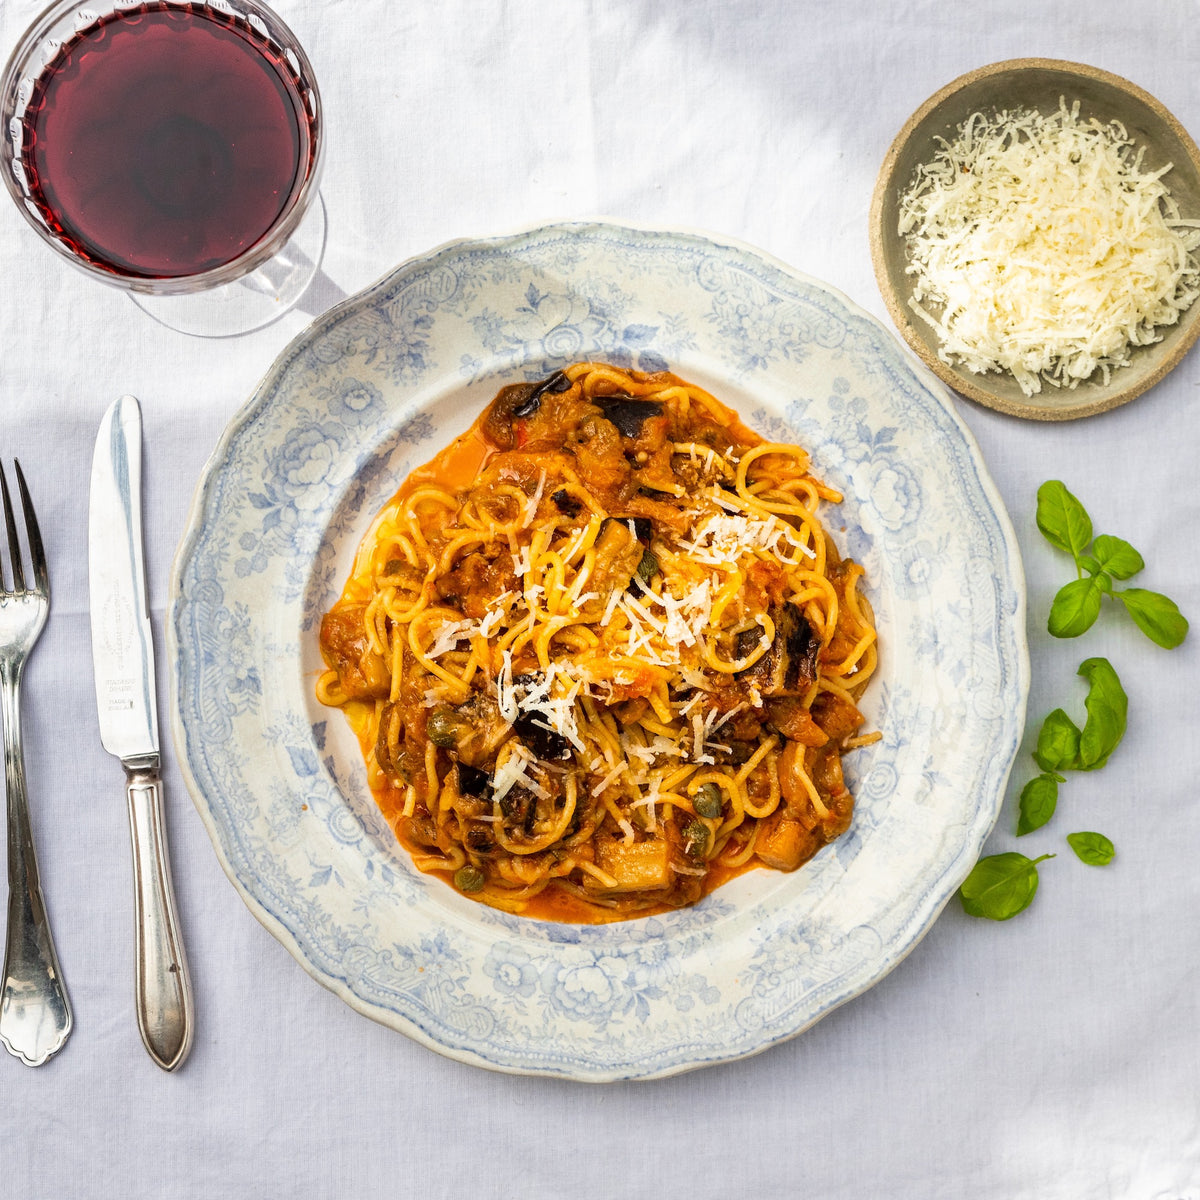 Spaghetti alla norma with salted ricotta